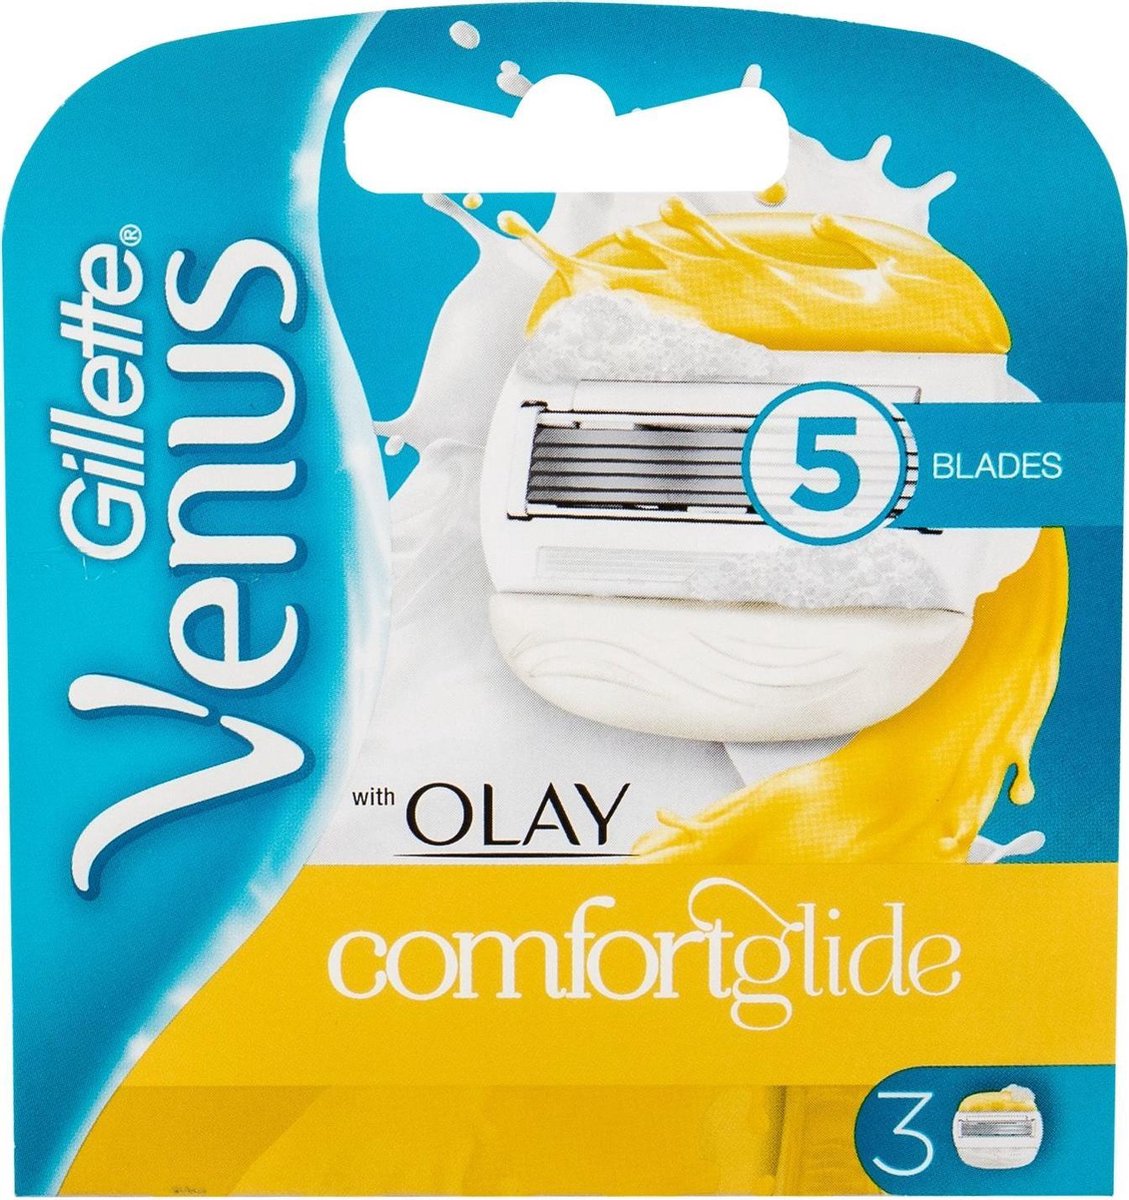 Gillette Scheermesjes Venus & Olaz Comfortglide - 3 Stuks